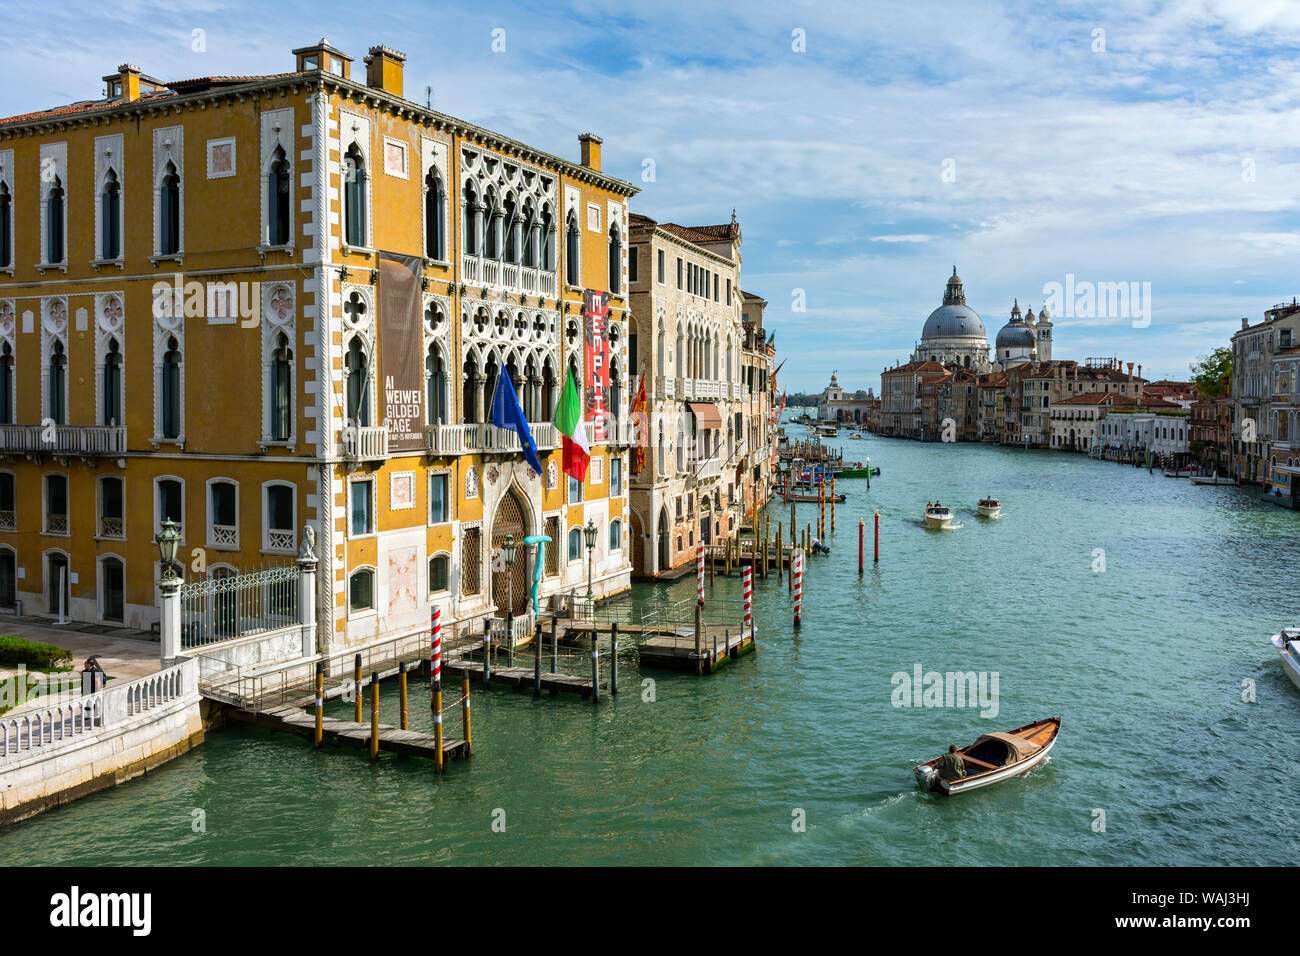 Il Palazzo Cavalli Franchetti e il Canal Grande e dal Ponte dell'Accademia bridge, Venezia, Italia Foto Stock